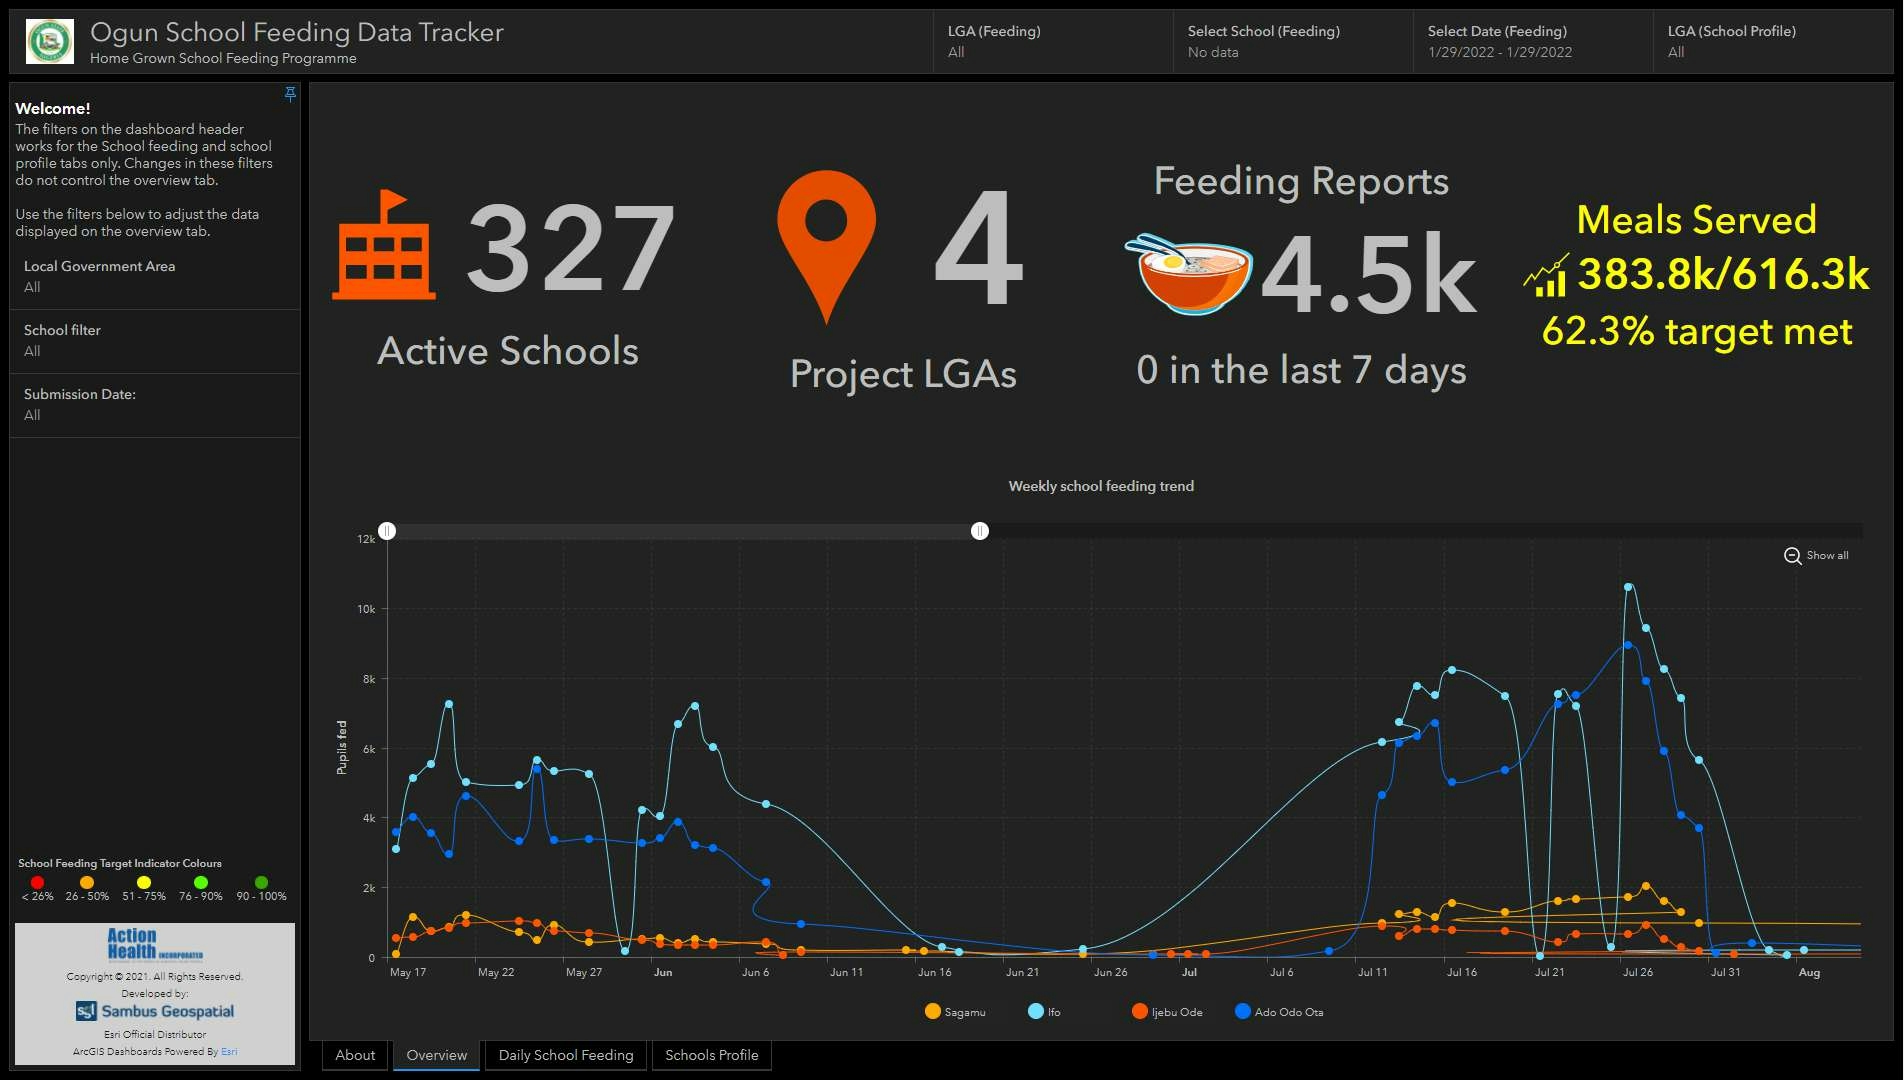 School Feeding Data Tracker